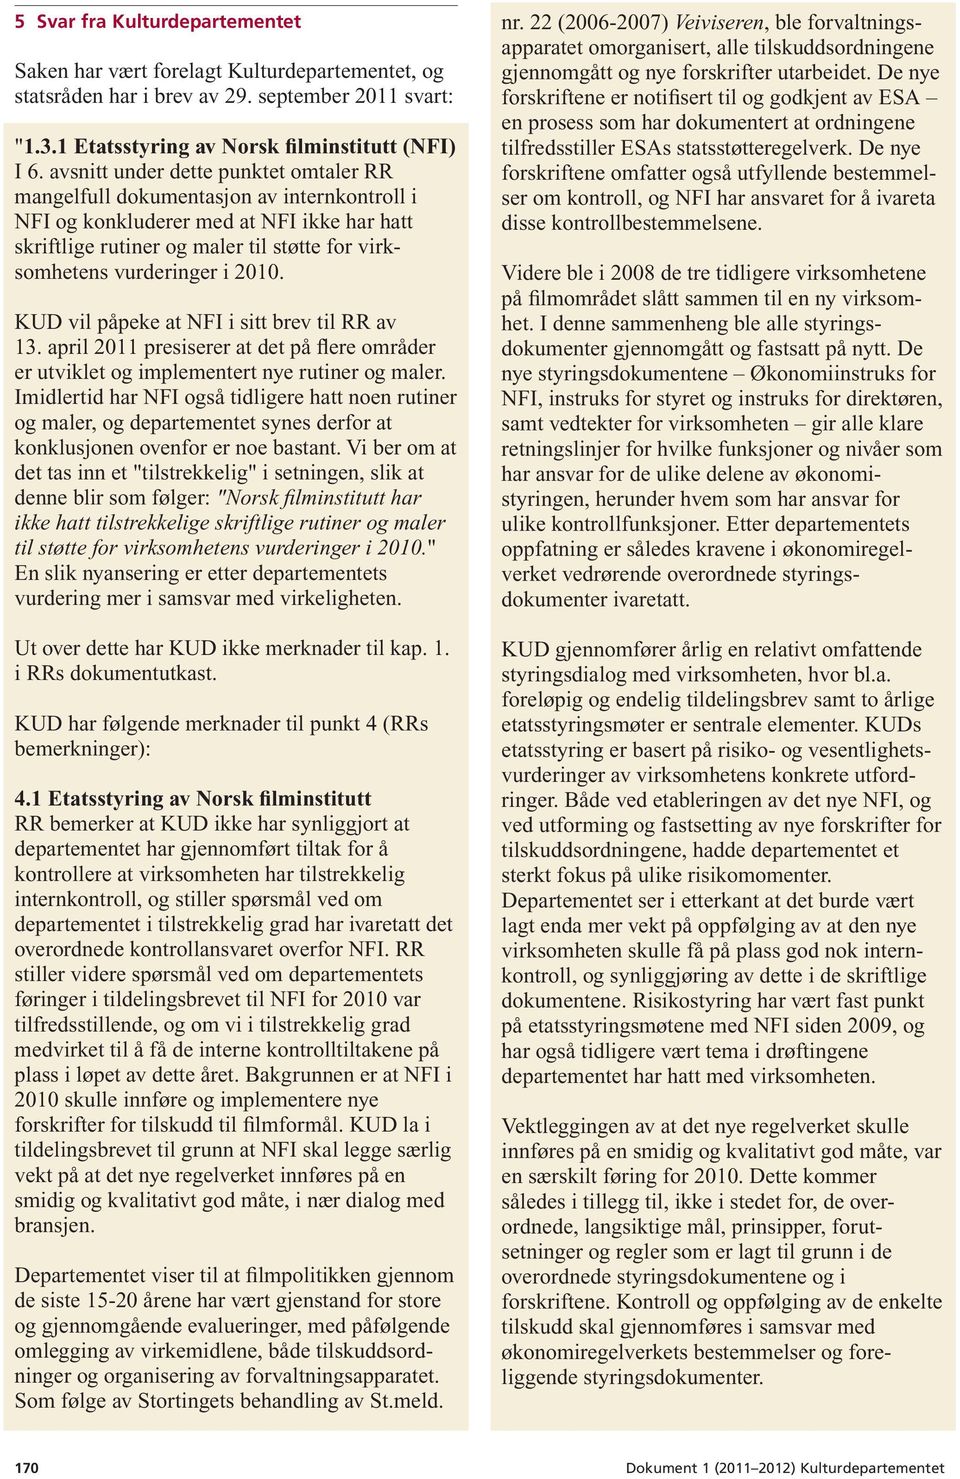 2010. KUD vil påpeke at NFI i sitt brev til RR av 13. april 2011 presiserer at det på flere områder er utviklet og implementert nye rutiner og maler.